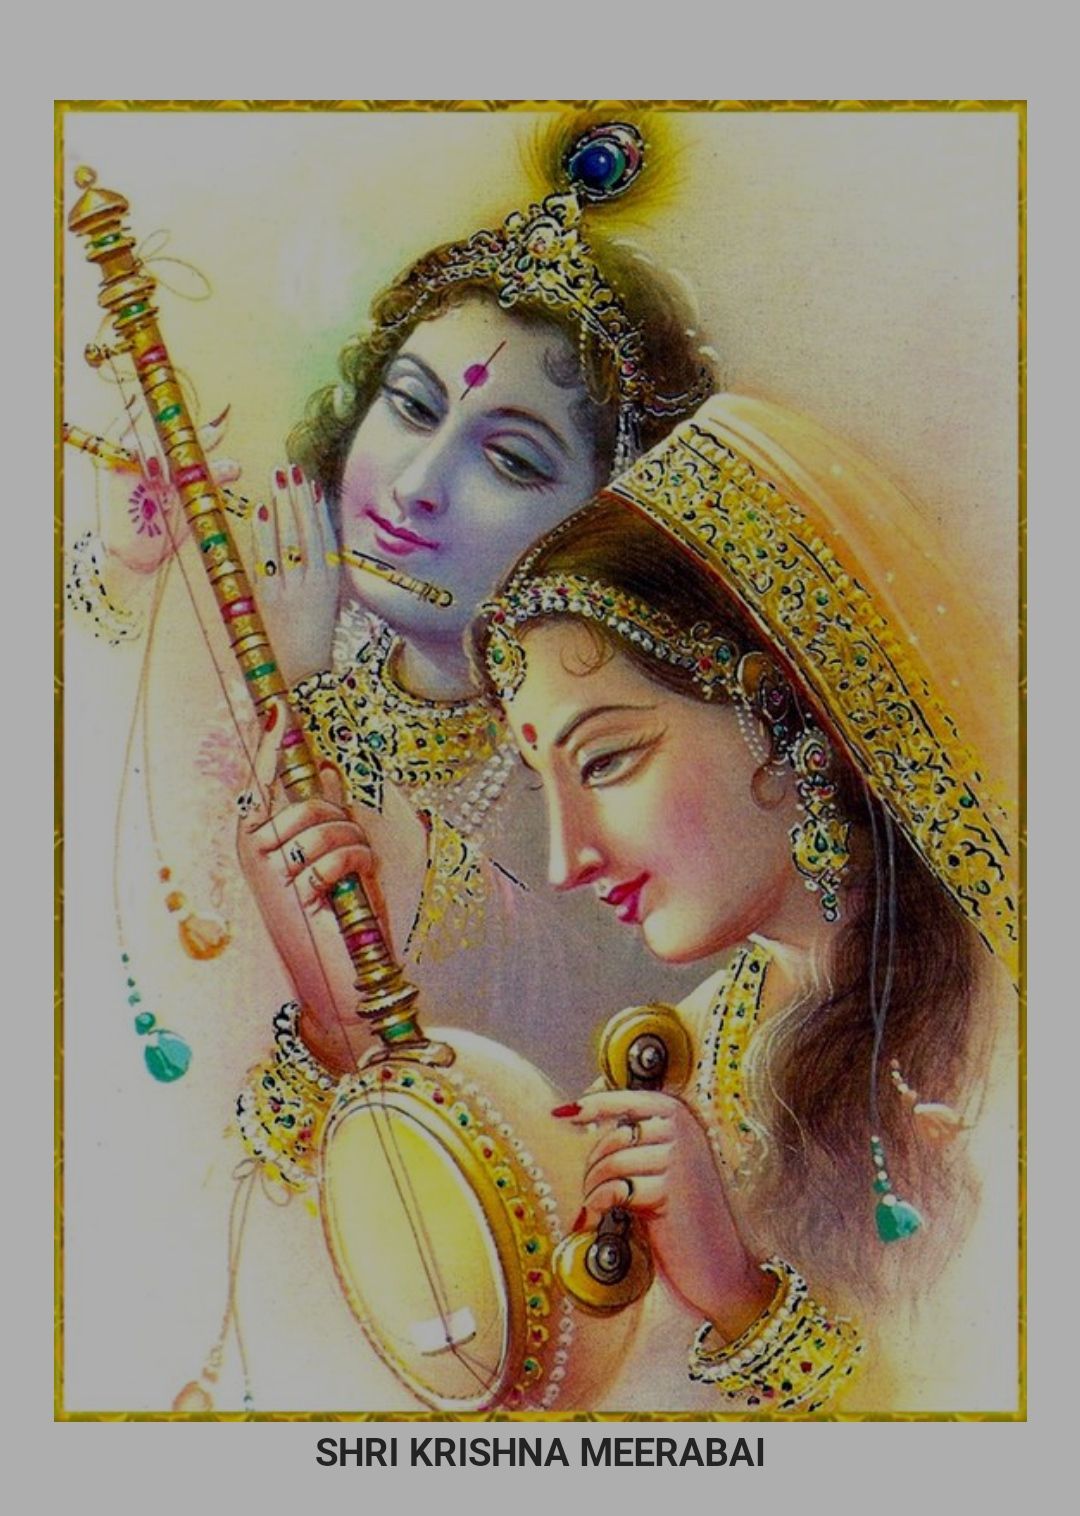 Meera Bai - The Devotee of Lord Krishna in Spirituality - os.me